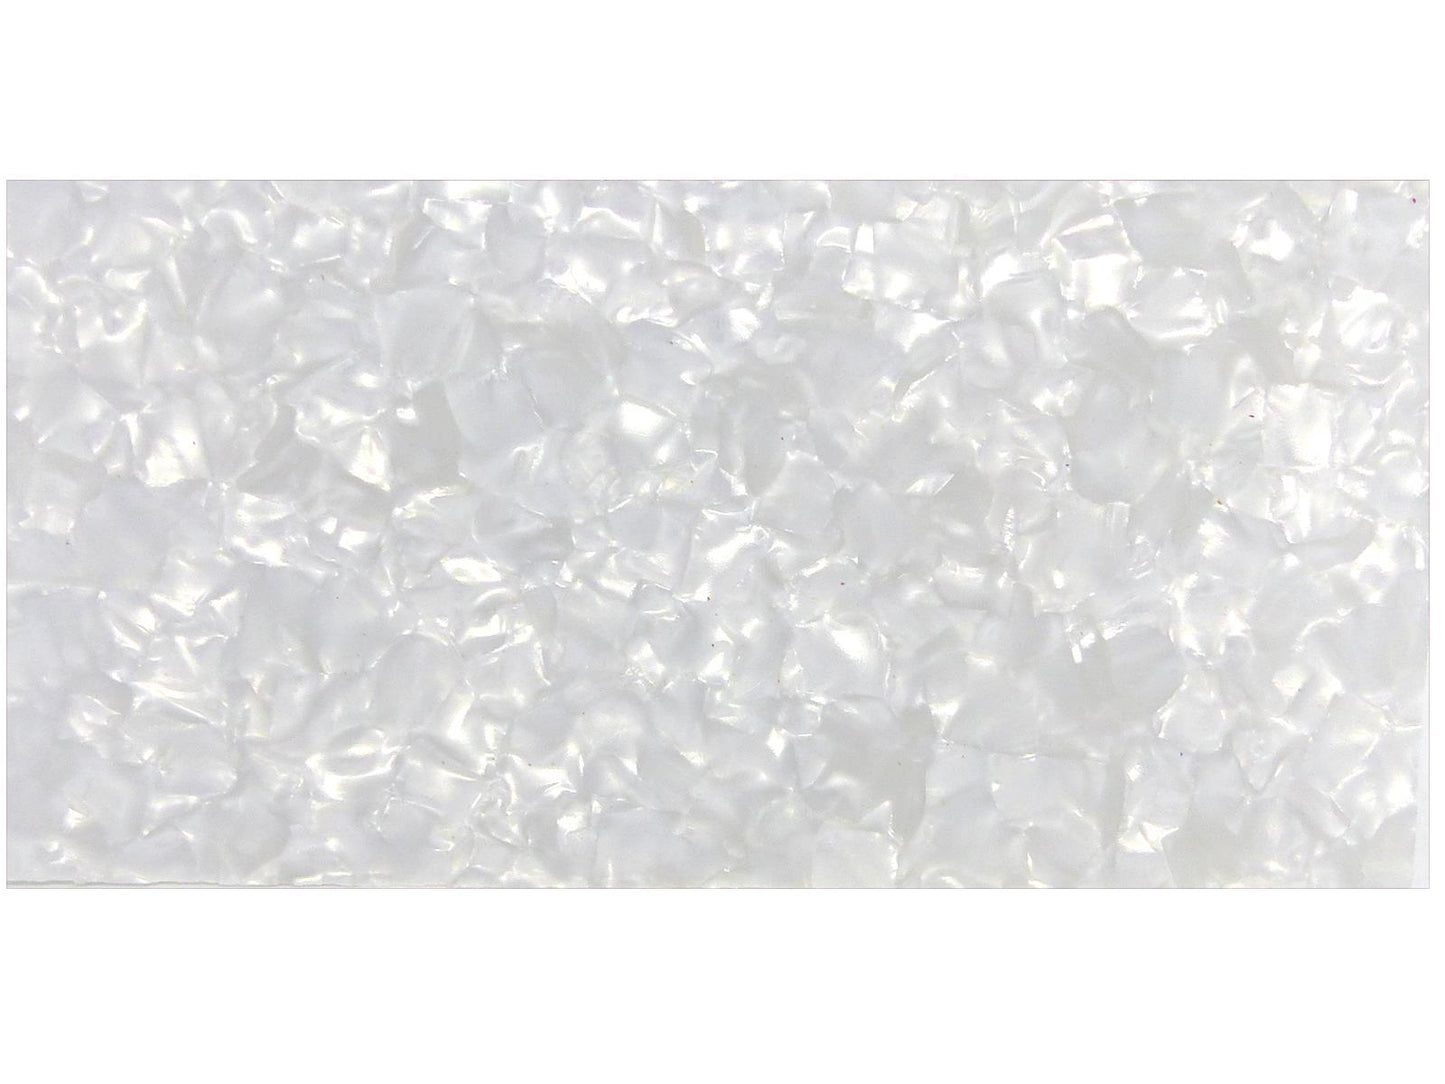 Incudo White Pearloid Celluloid Sheet - 200x100x1.2mm (7.9x3.94x0.05")